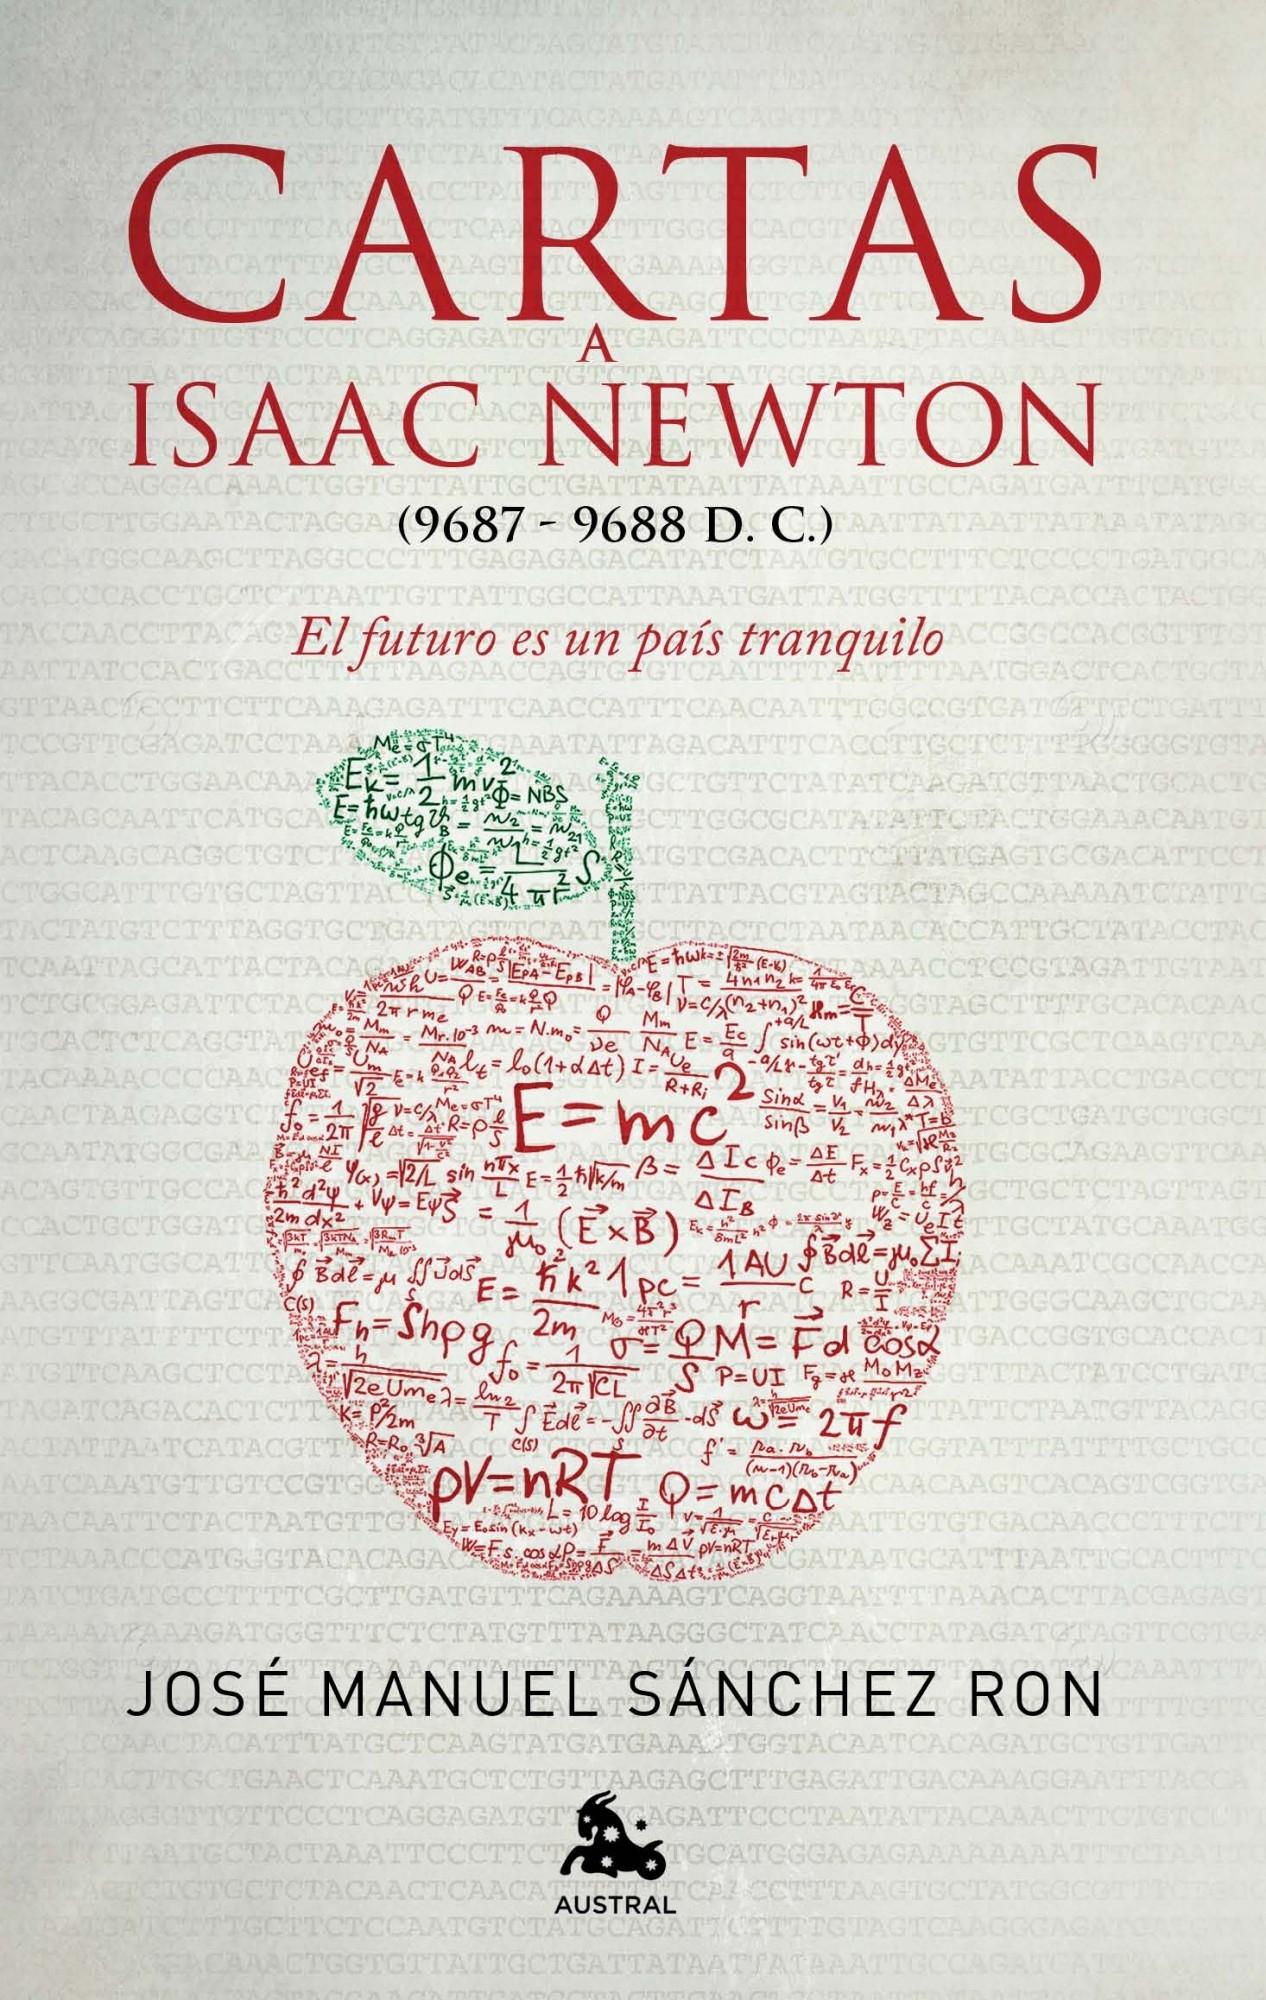 Cartas a Isaac Newton "El futuro es un país tranquilo"